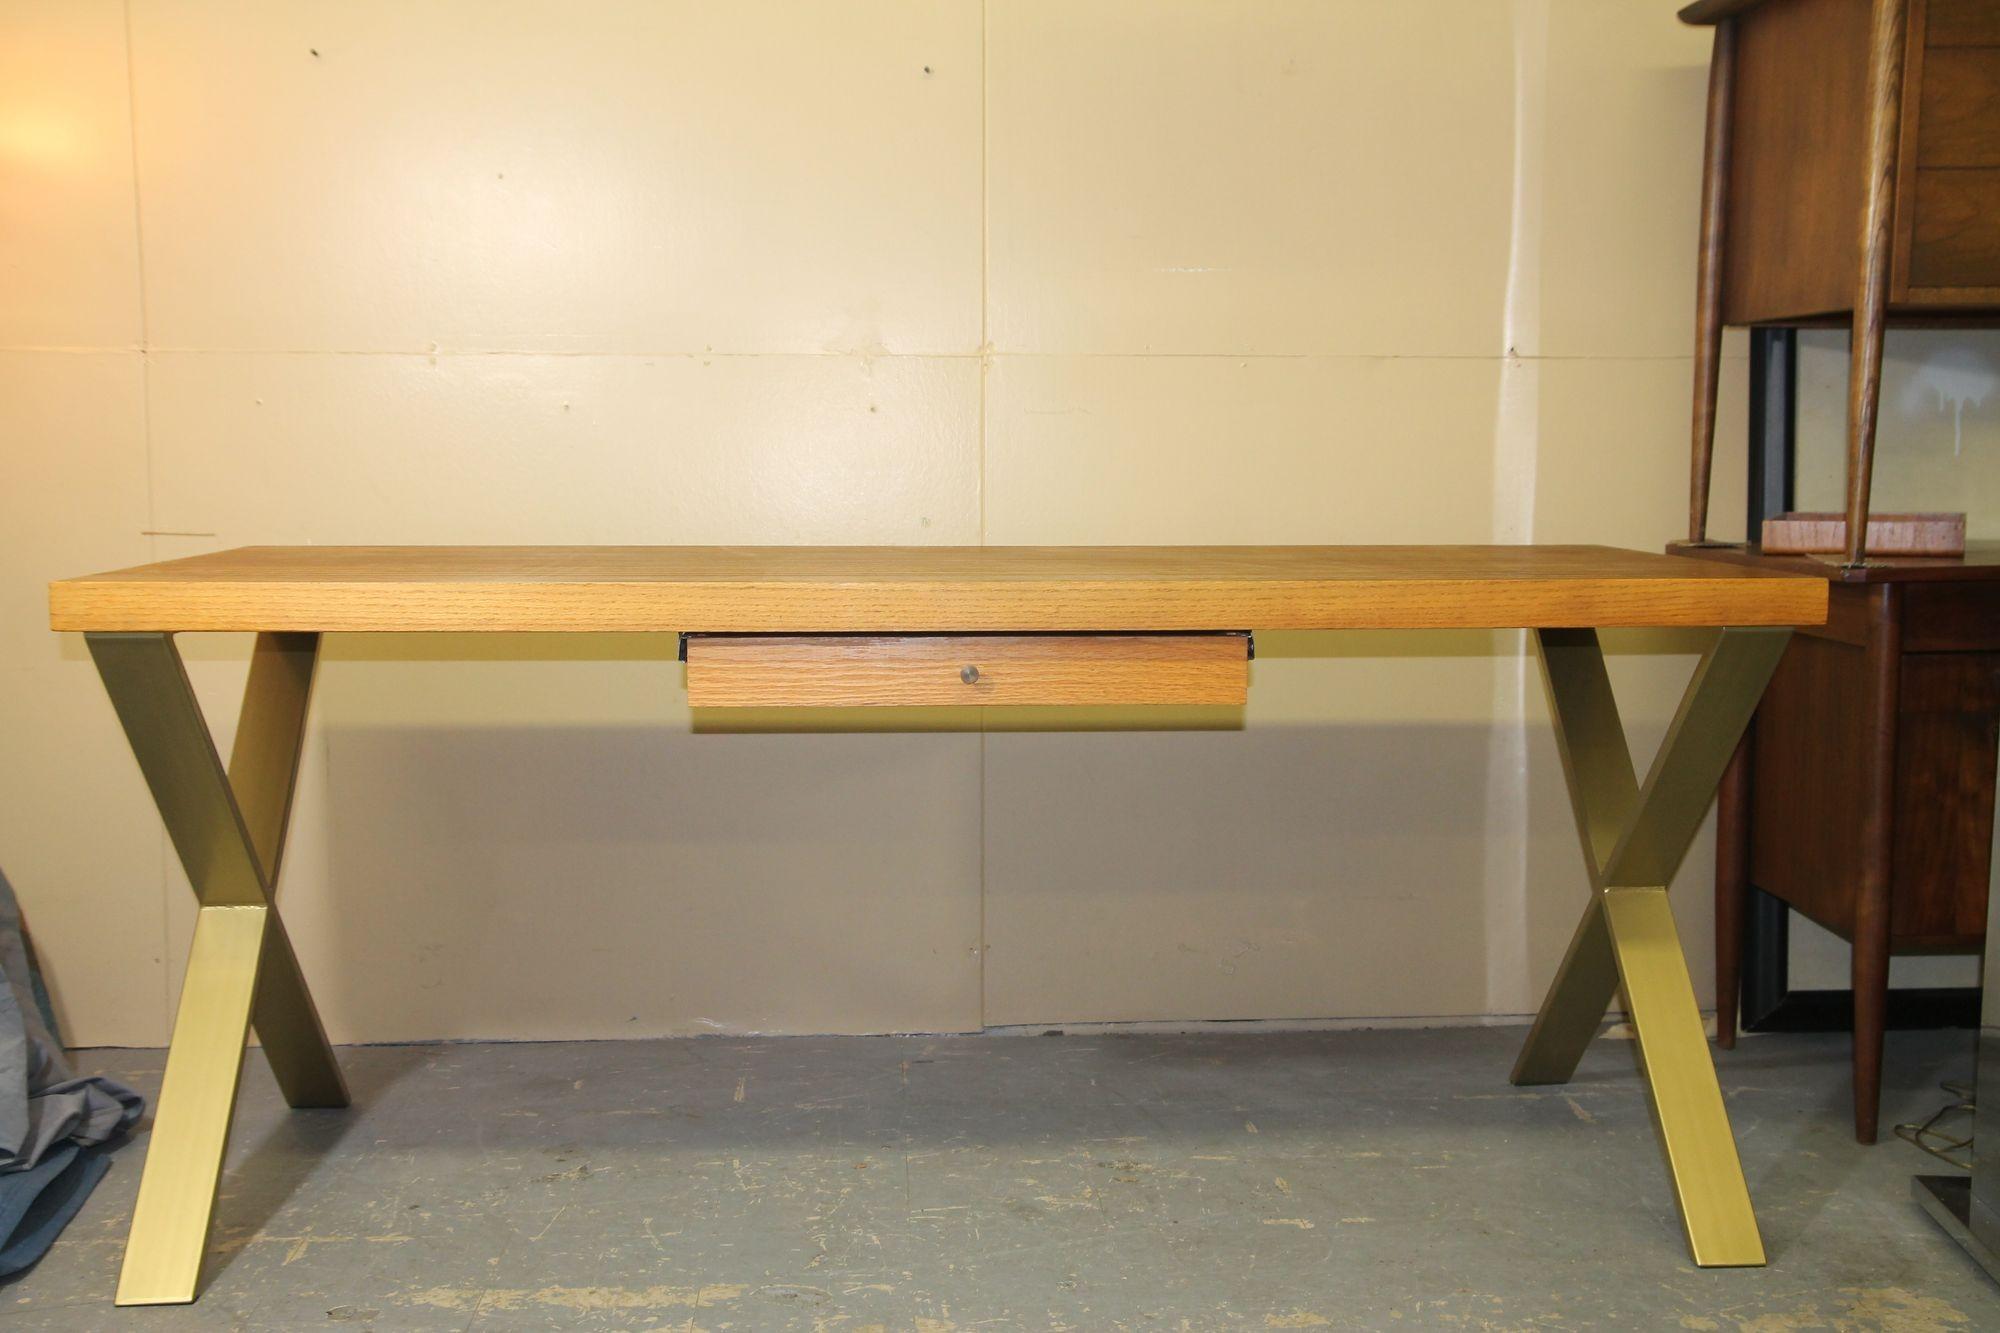 Nous avons le plaisir de vous proposer ce superbe bureau en noyer et chêne avec un seul tiroir. Ce superbe bureau repose sur une paire de pieds en forme de X en laiton et en or. C'est encore plus impressionnant en personne.